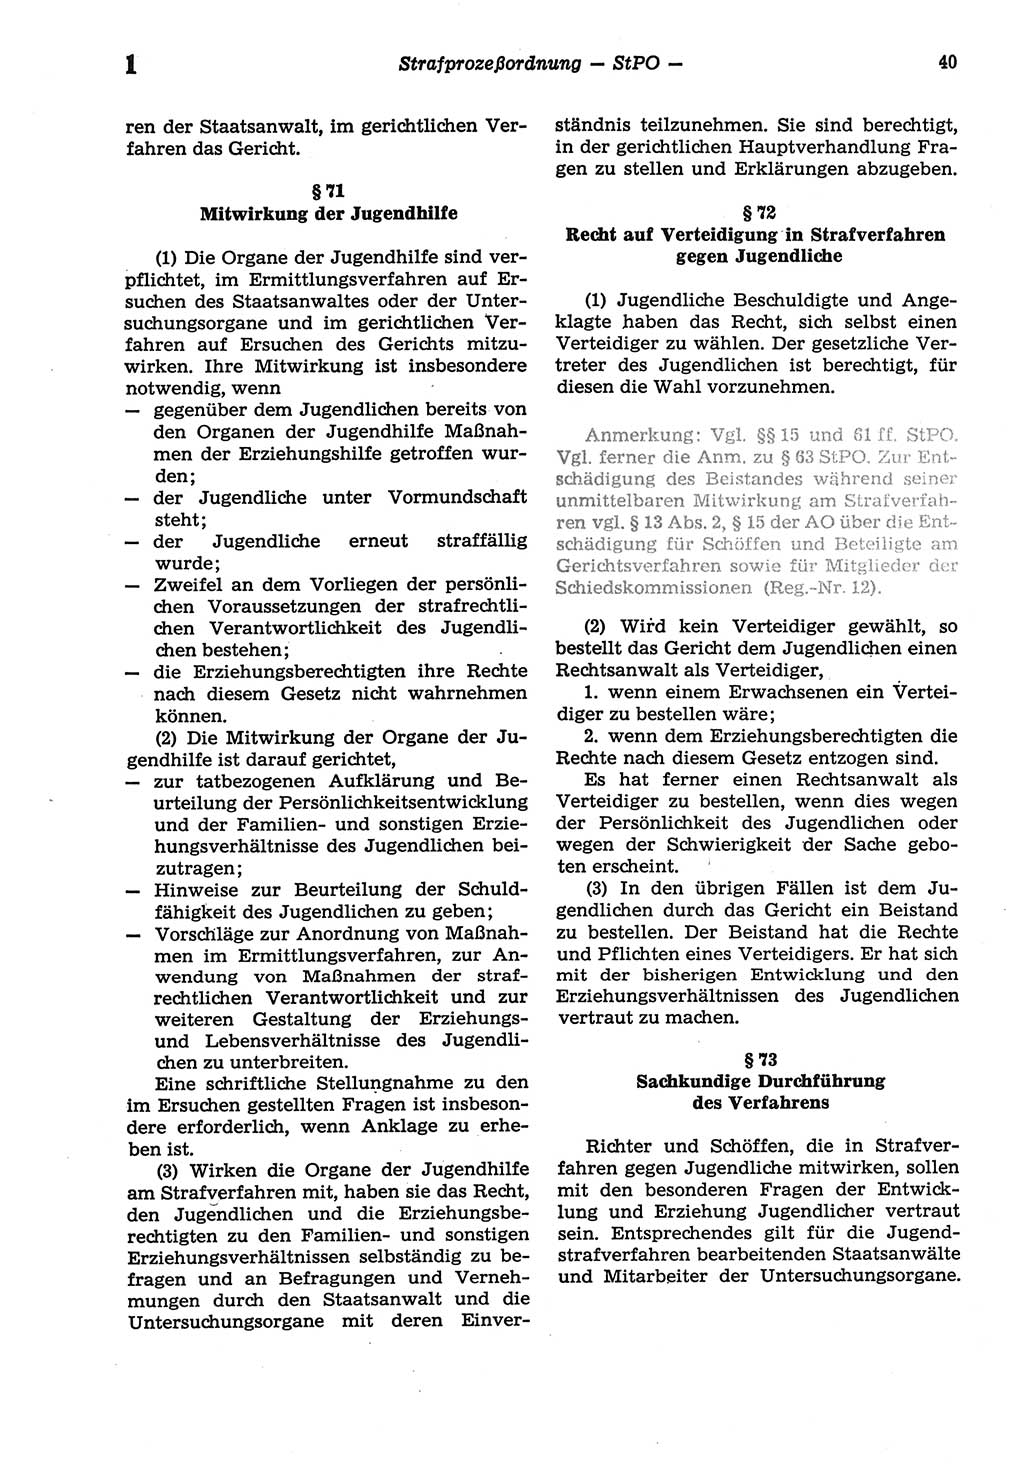 Strafprozeßordnung (StPO) der Deutschen Demokratischen Republik (DDR) sowie angrenzende Gesetze und Bestimmungen 1977, Seite 40 (StPO DDR Ges. Best. 1977, S. 40)